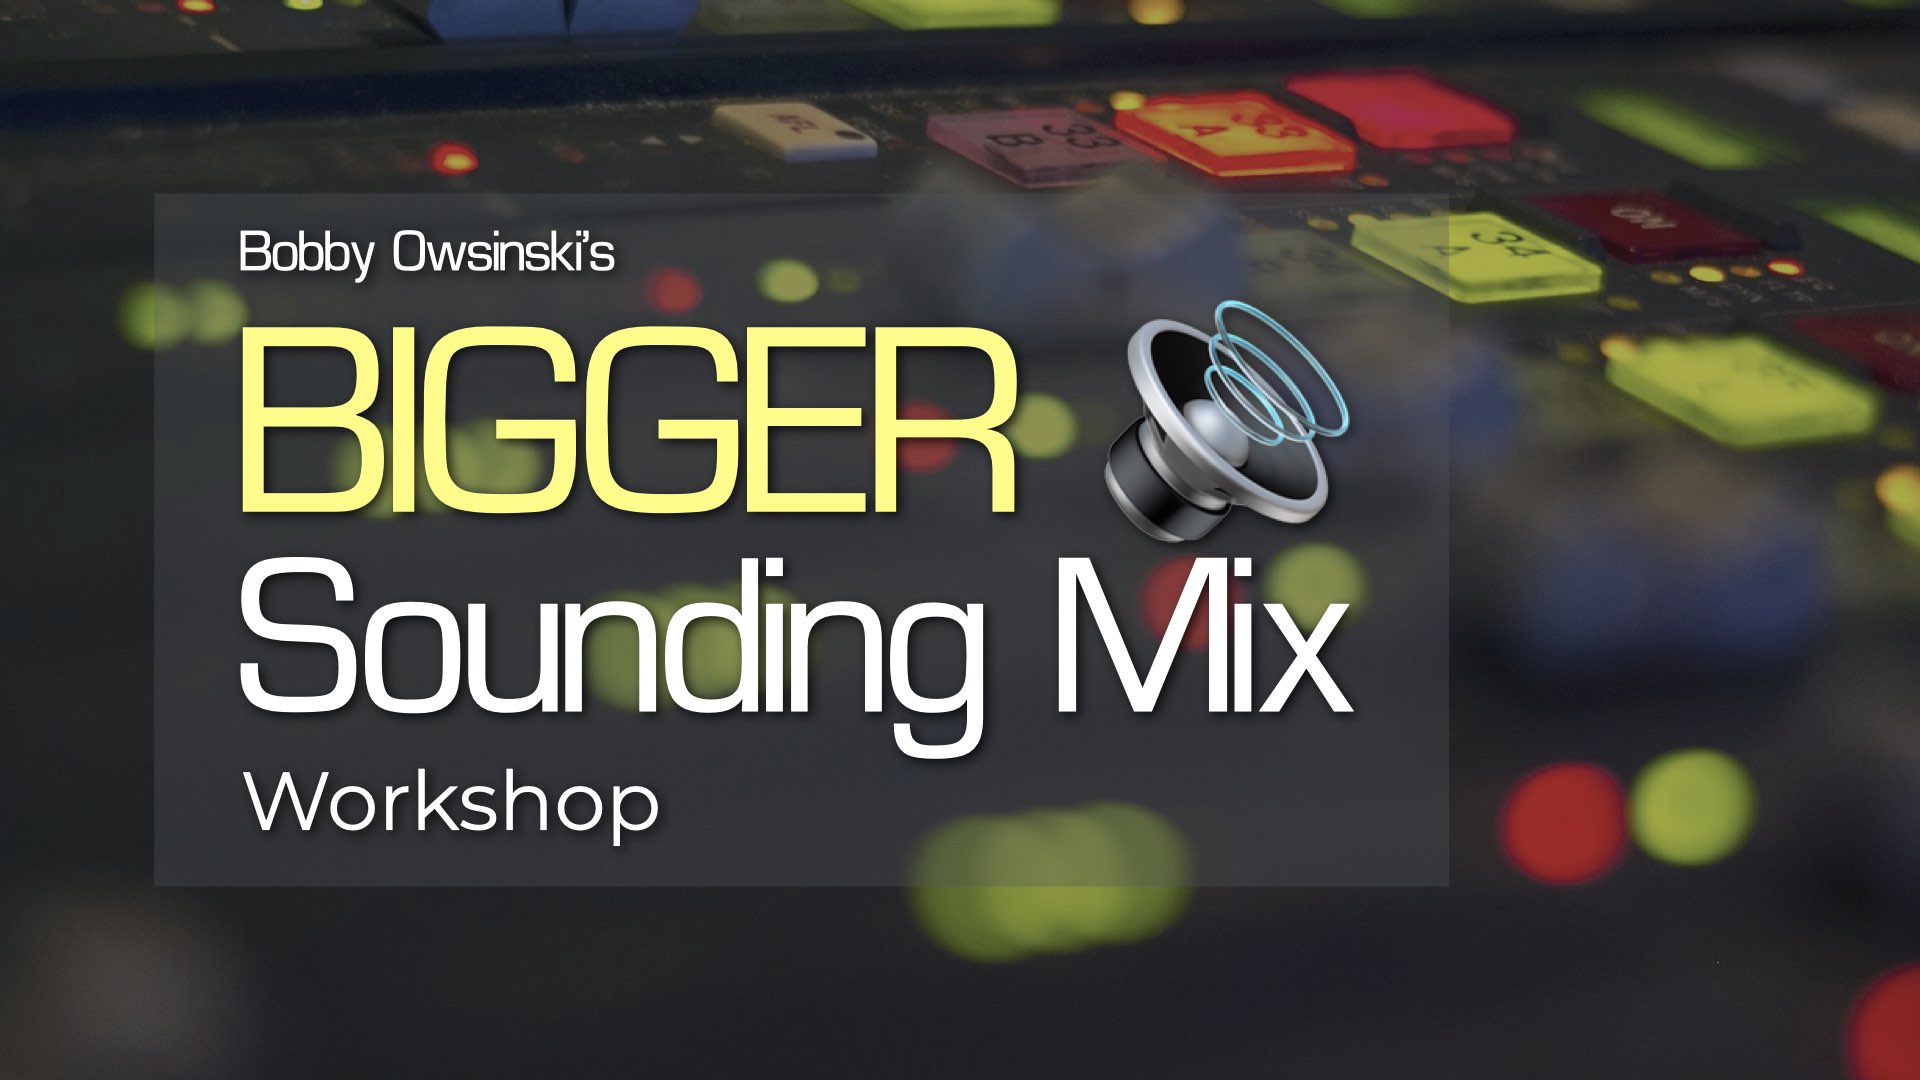 Bigger Sounding Mix Workshop image